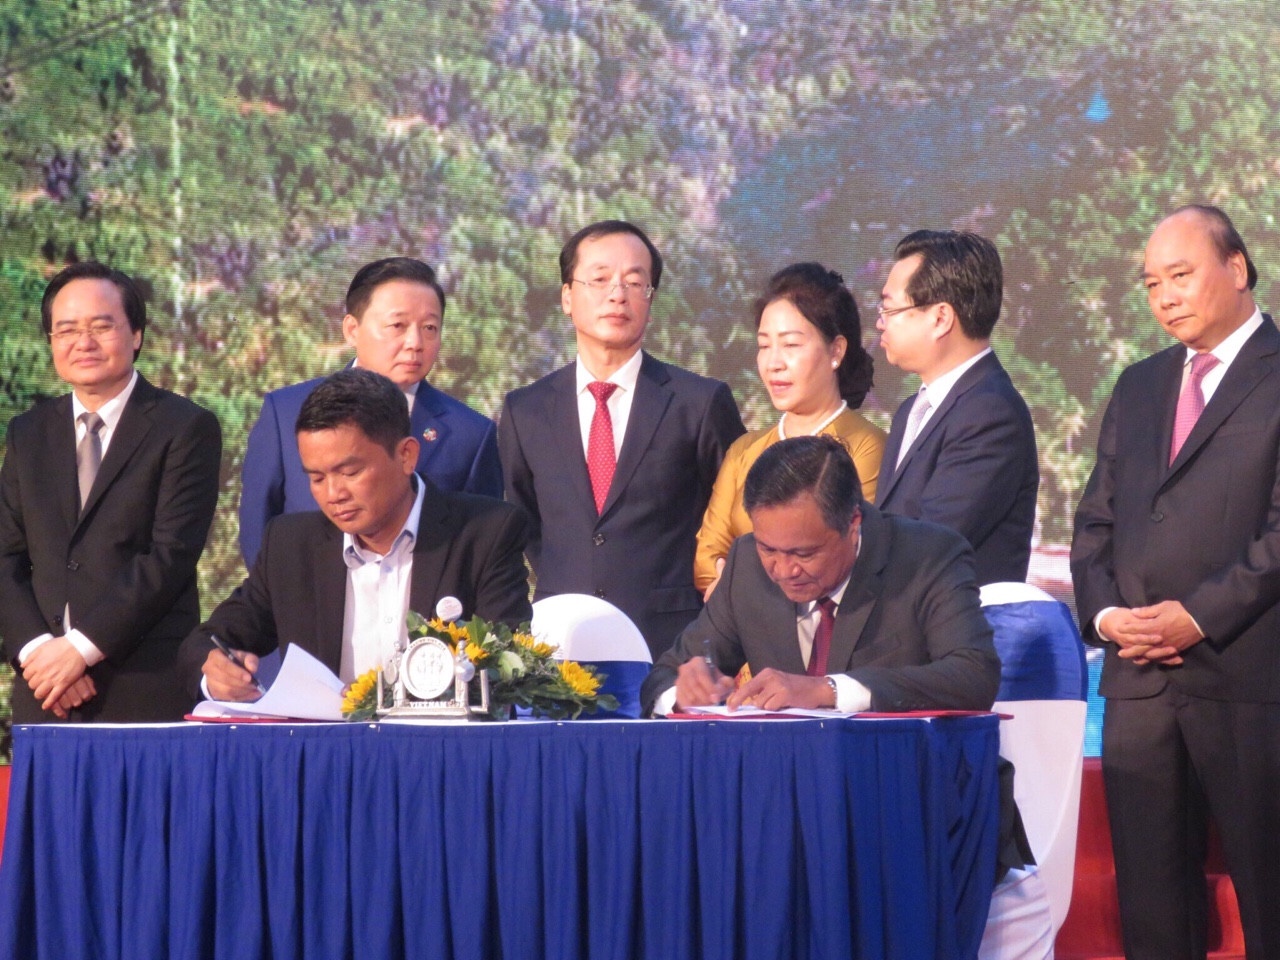 Ngày 29-7-2019, DN CCB Vũ Trung Kiên (bàn trên từ trái) ký kết dự án Nhà máy xử lý rác thải và điện năng lượng mặt trời ở tỉnh Kiên Giang với sự chứng kiến của Thủ tướng Nguyễn Xuân Phúc.